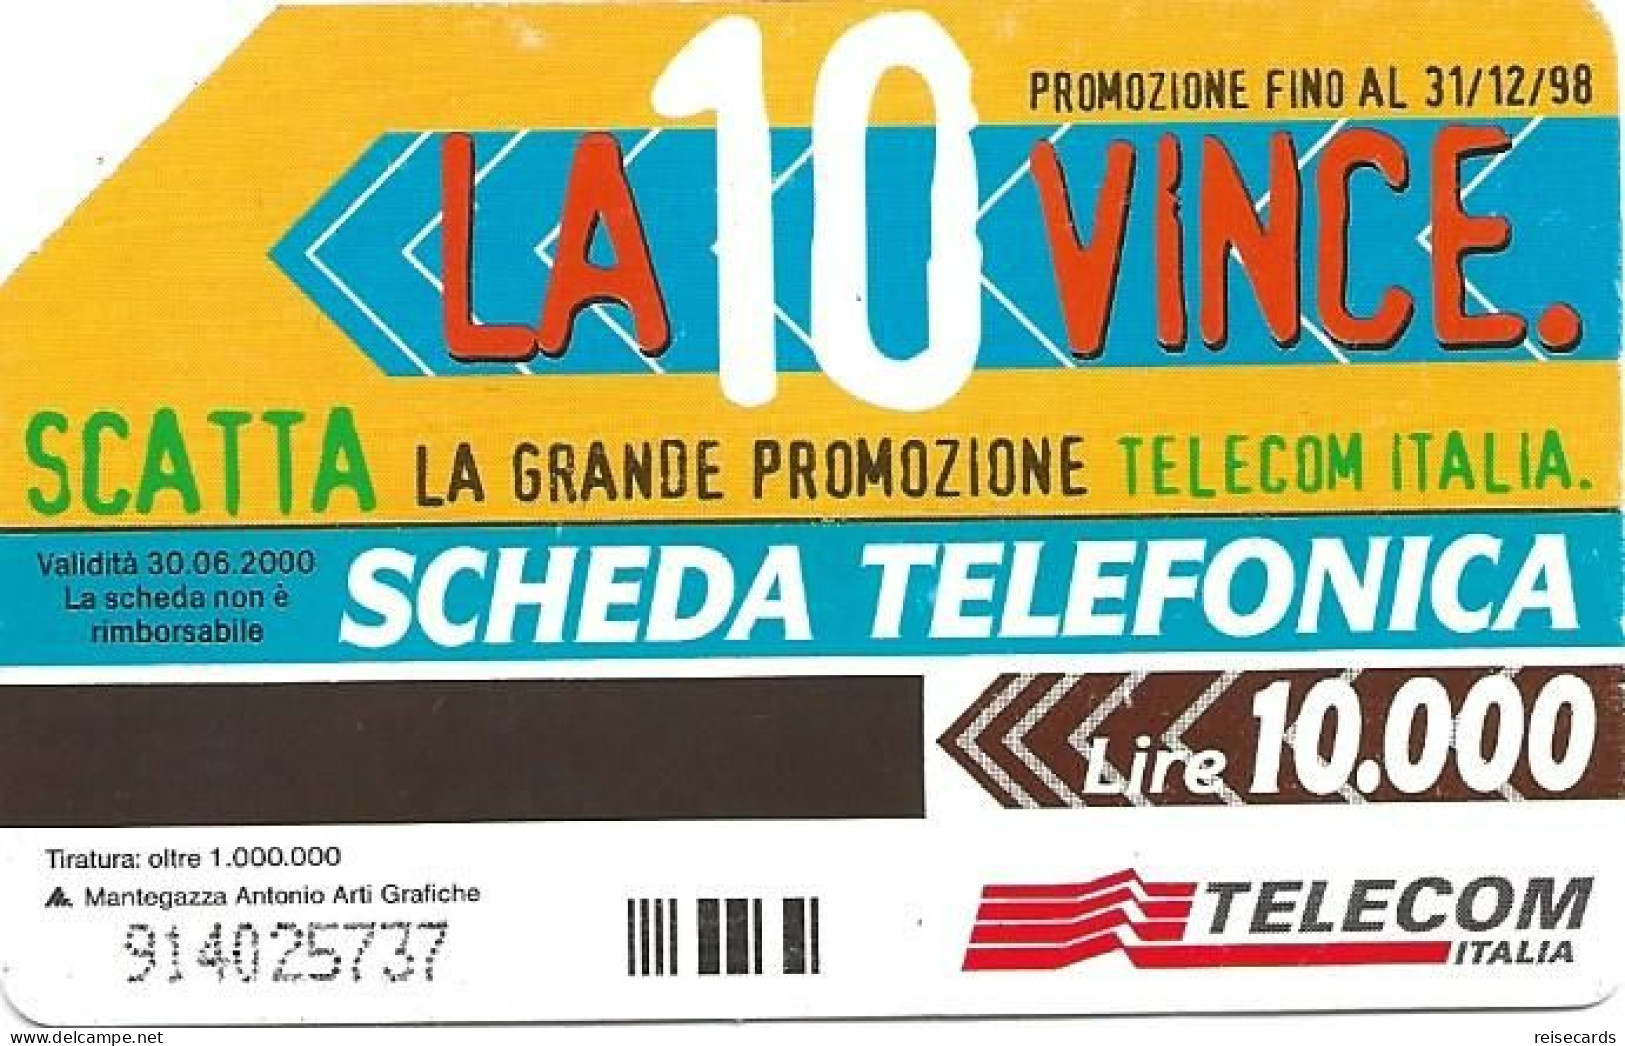 Italy: Telecom Italia - La 10 Vince - Openbare Reclame